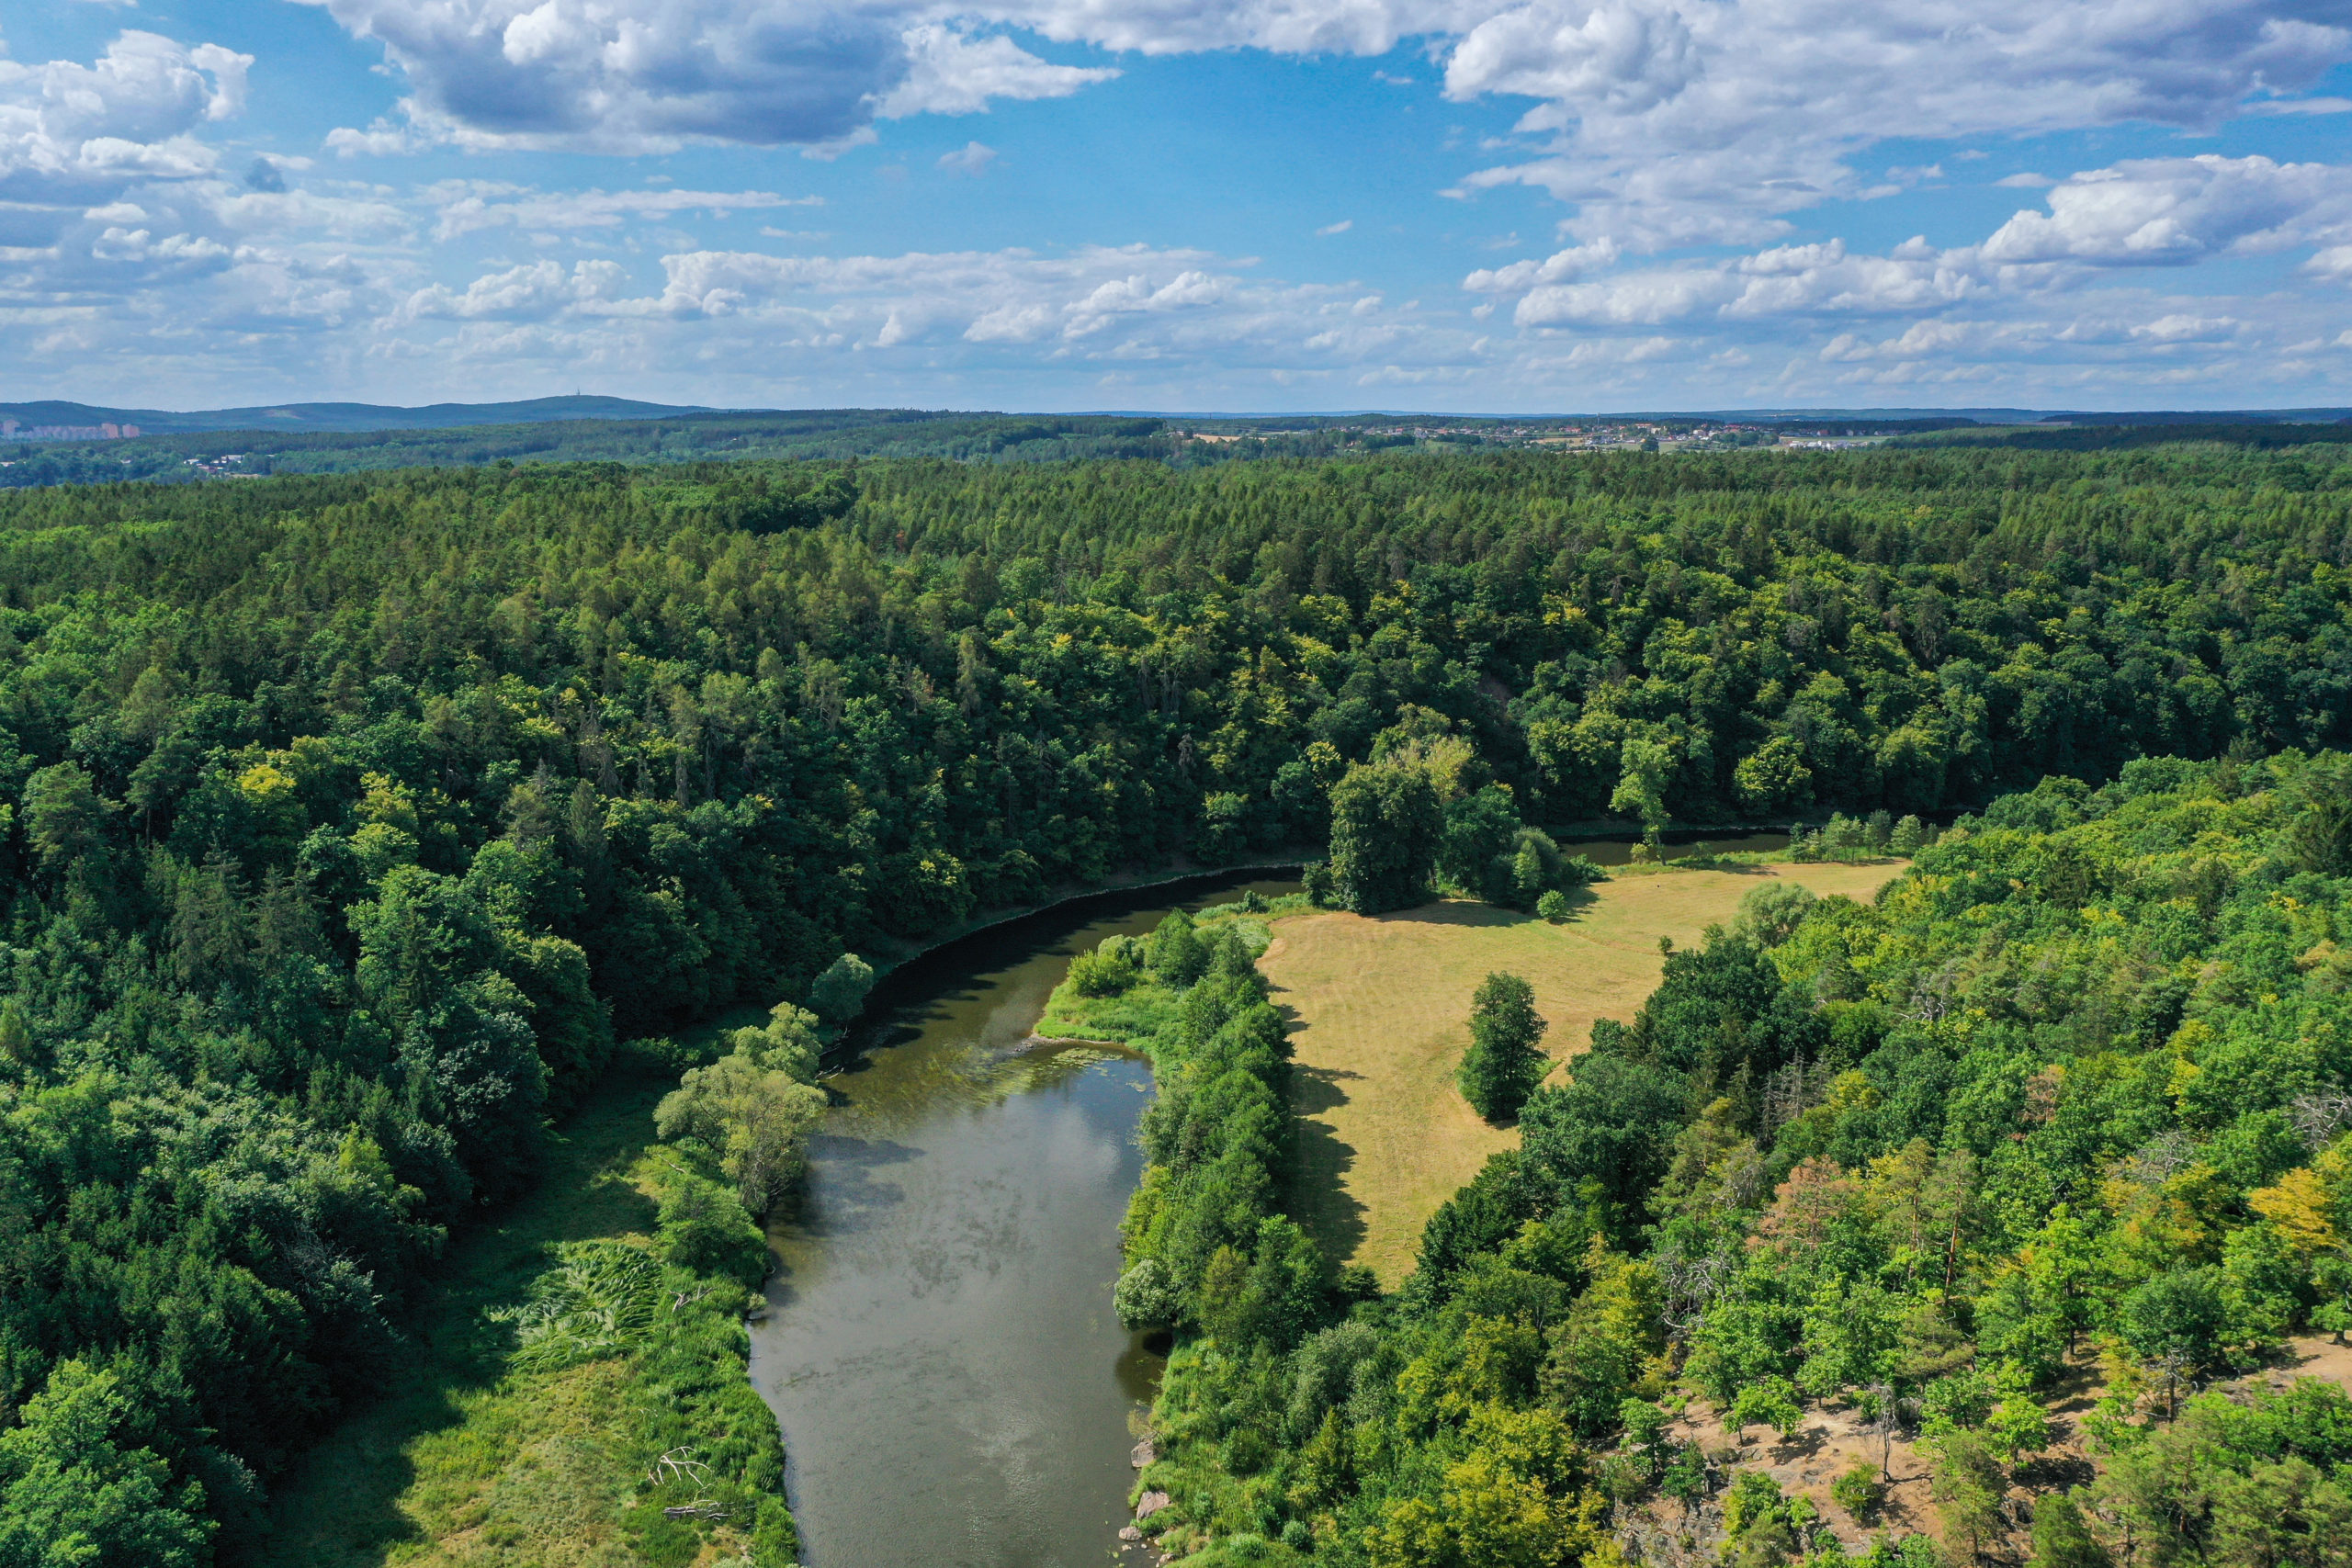 <h1>Háj a Zábělá</h1><br />
Pohled na lokalitu Háj z ptačí perspektivy. Lesnatý pás prochází podél ohybu koryta řeky od levé k pravé straně snímku. V popředí vlevo dole Zábělá – svah smíšeného lesa. Ve střední části řeka Berounka.